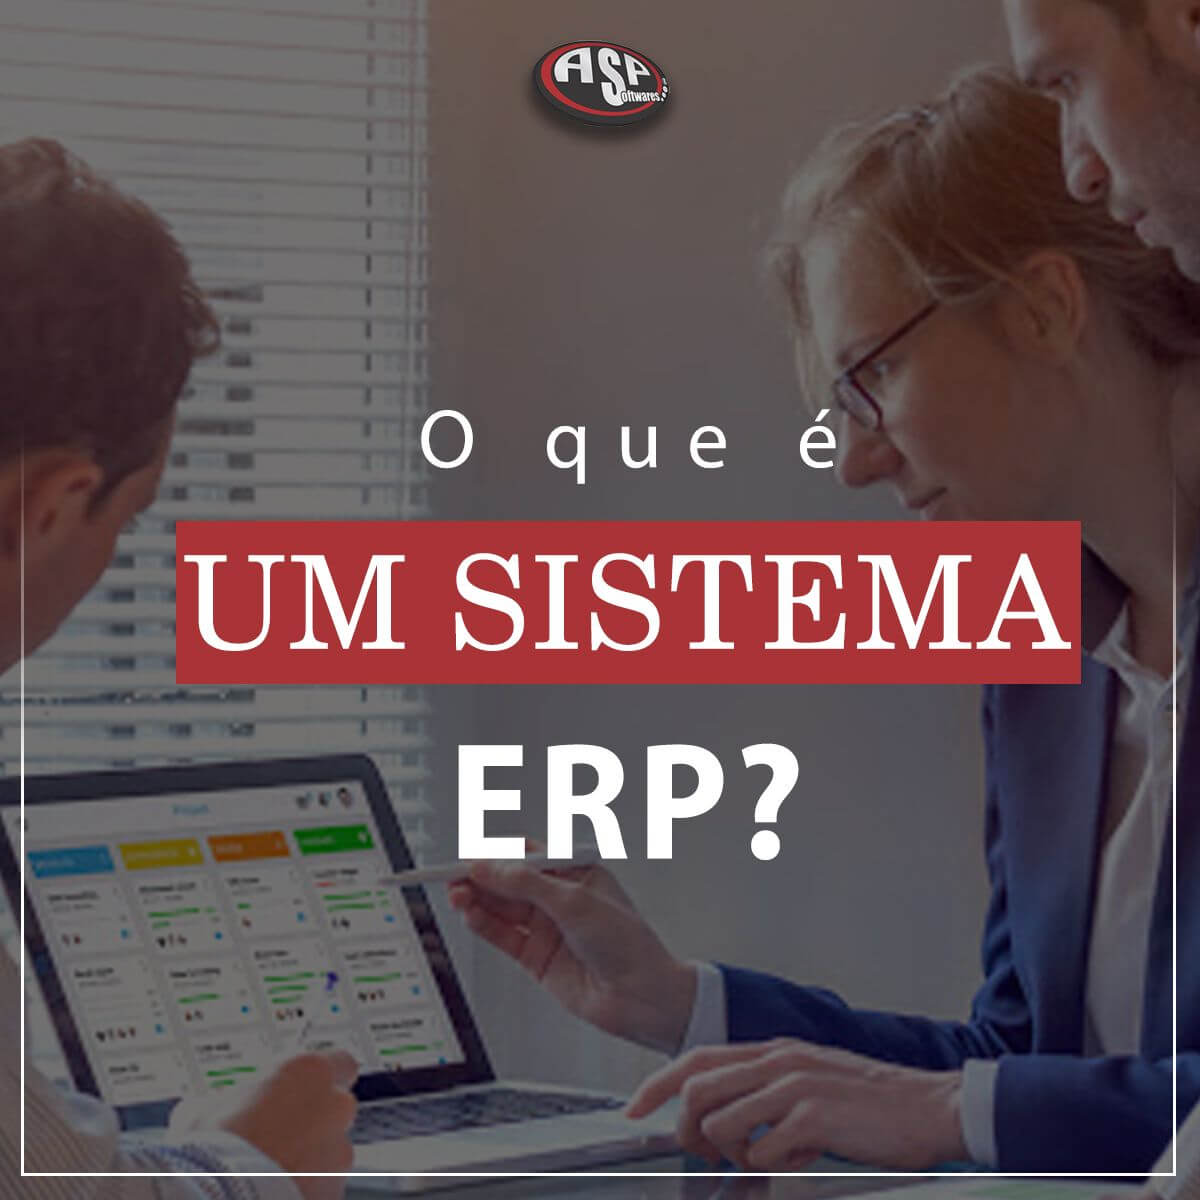 O que é um sistema ERP?